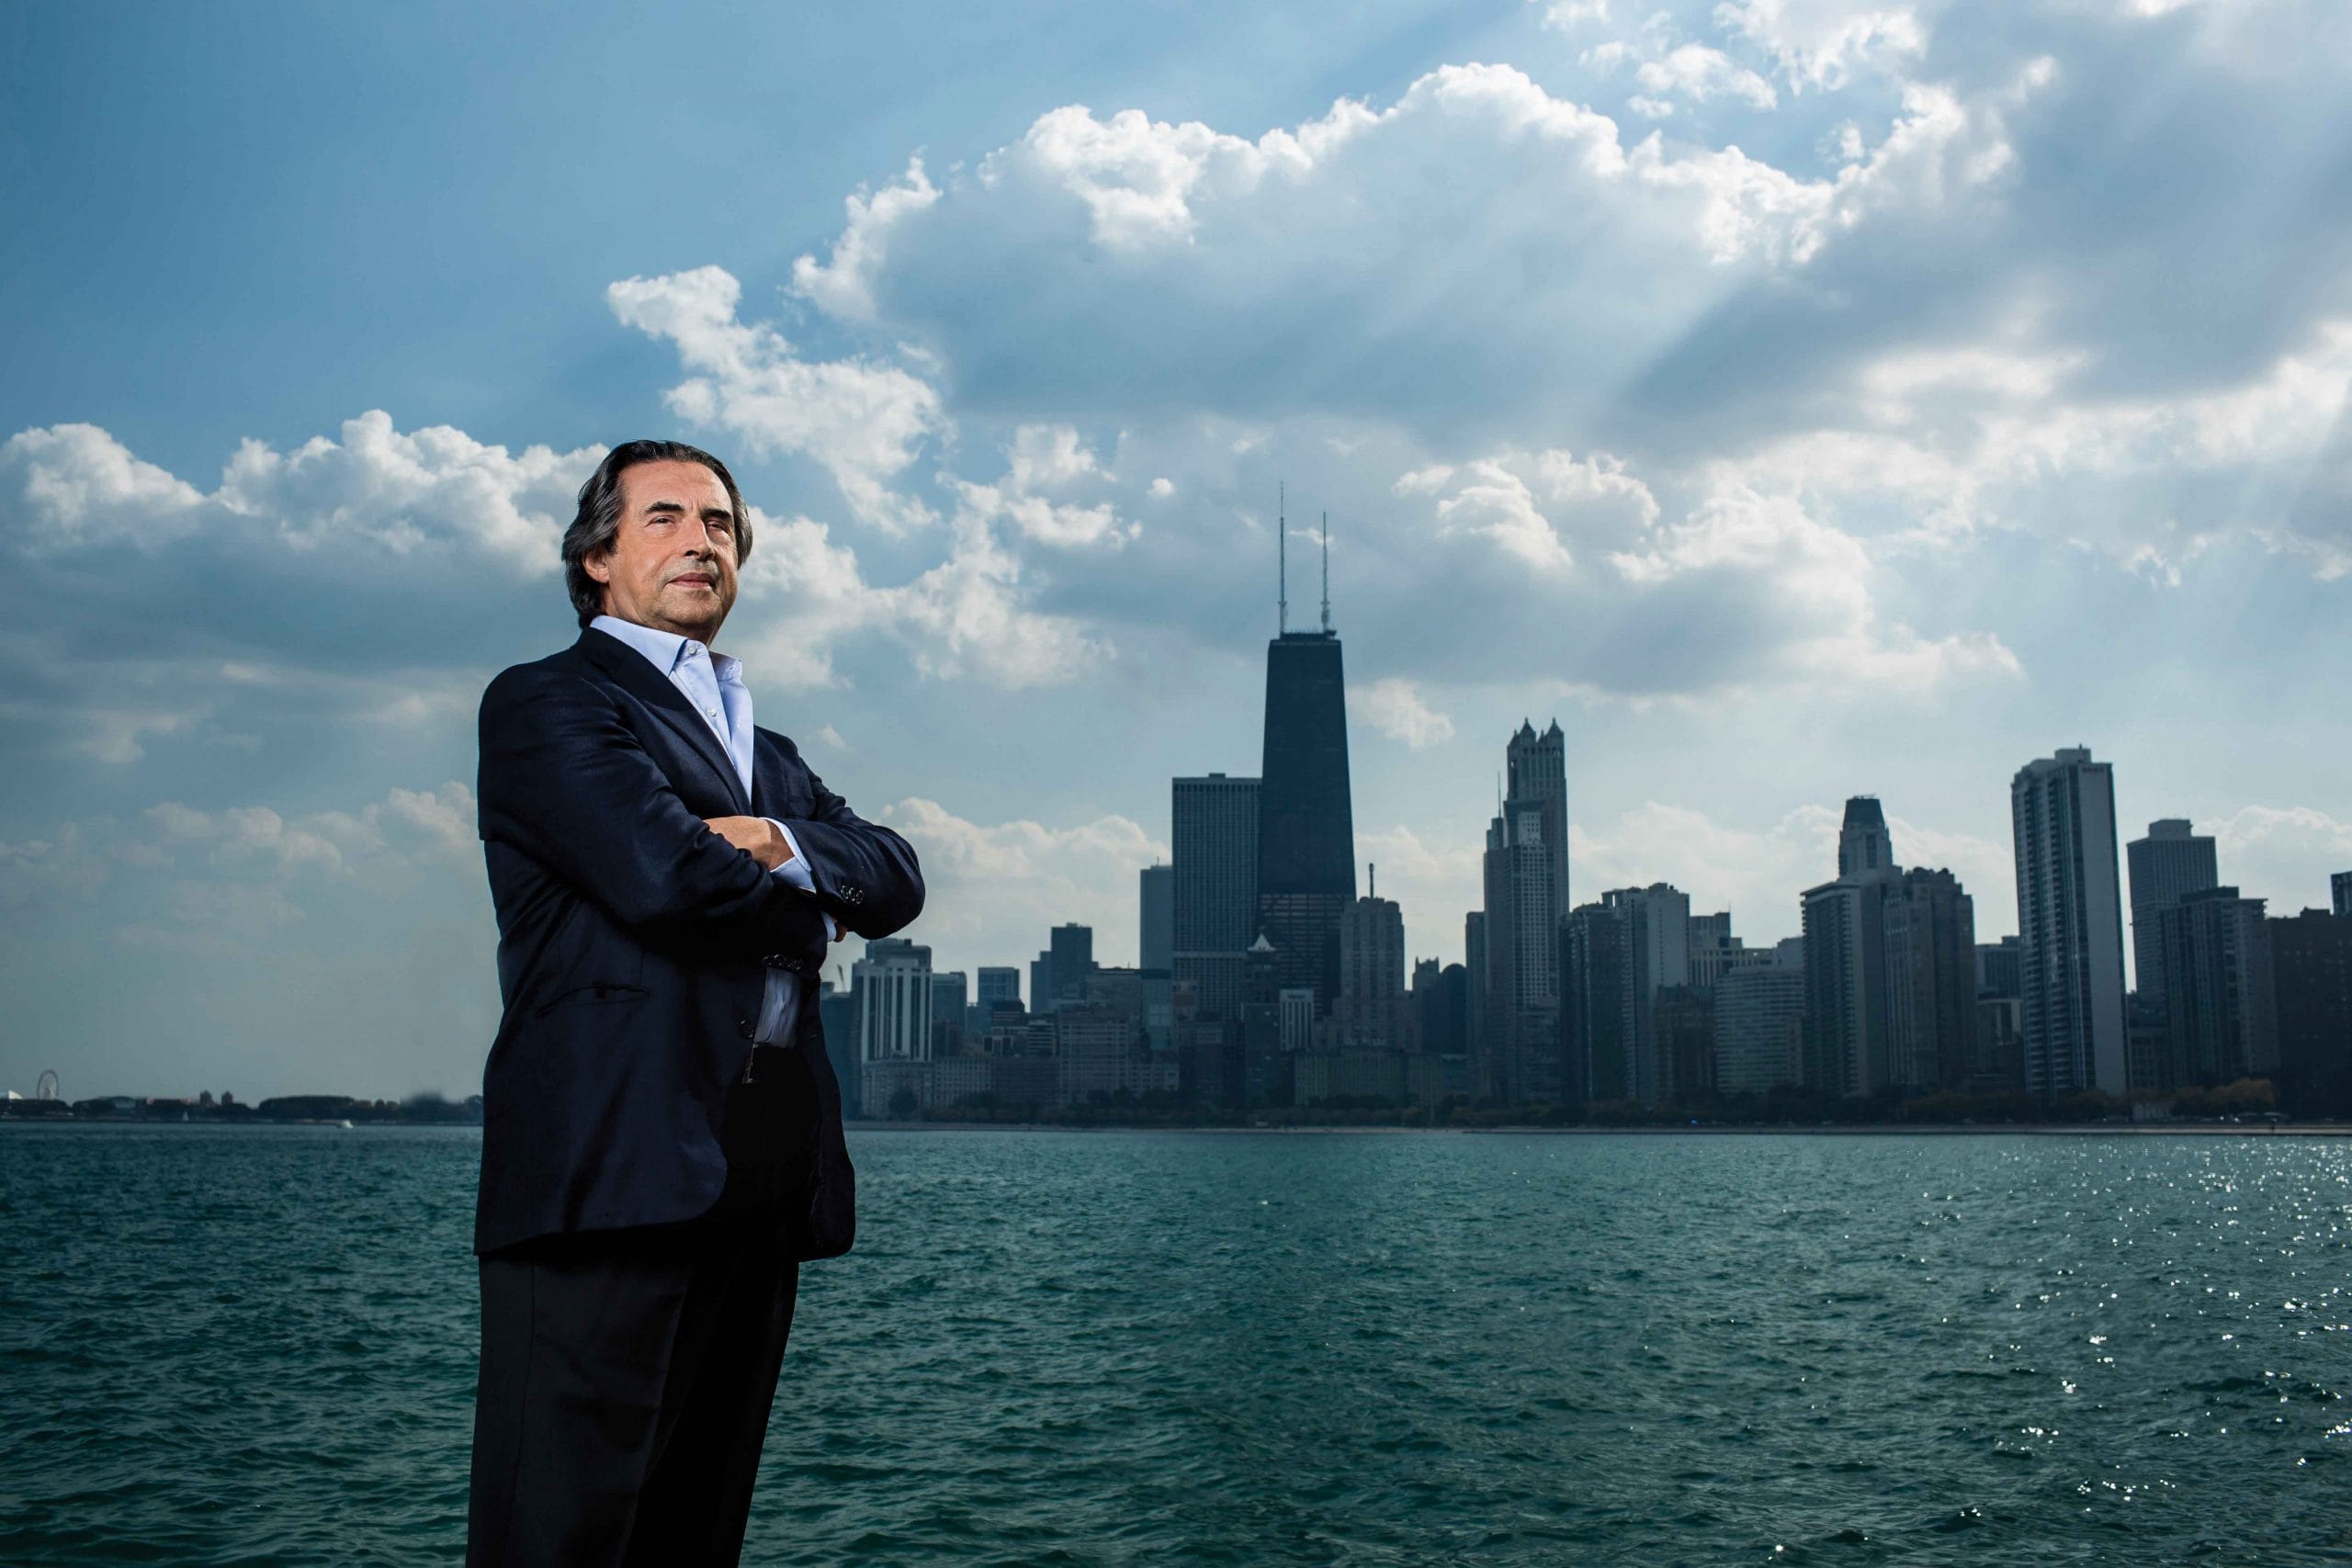 A Firenze la Chicago Symphony Orchestra diretta dal maestro Riccardo Muti